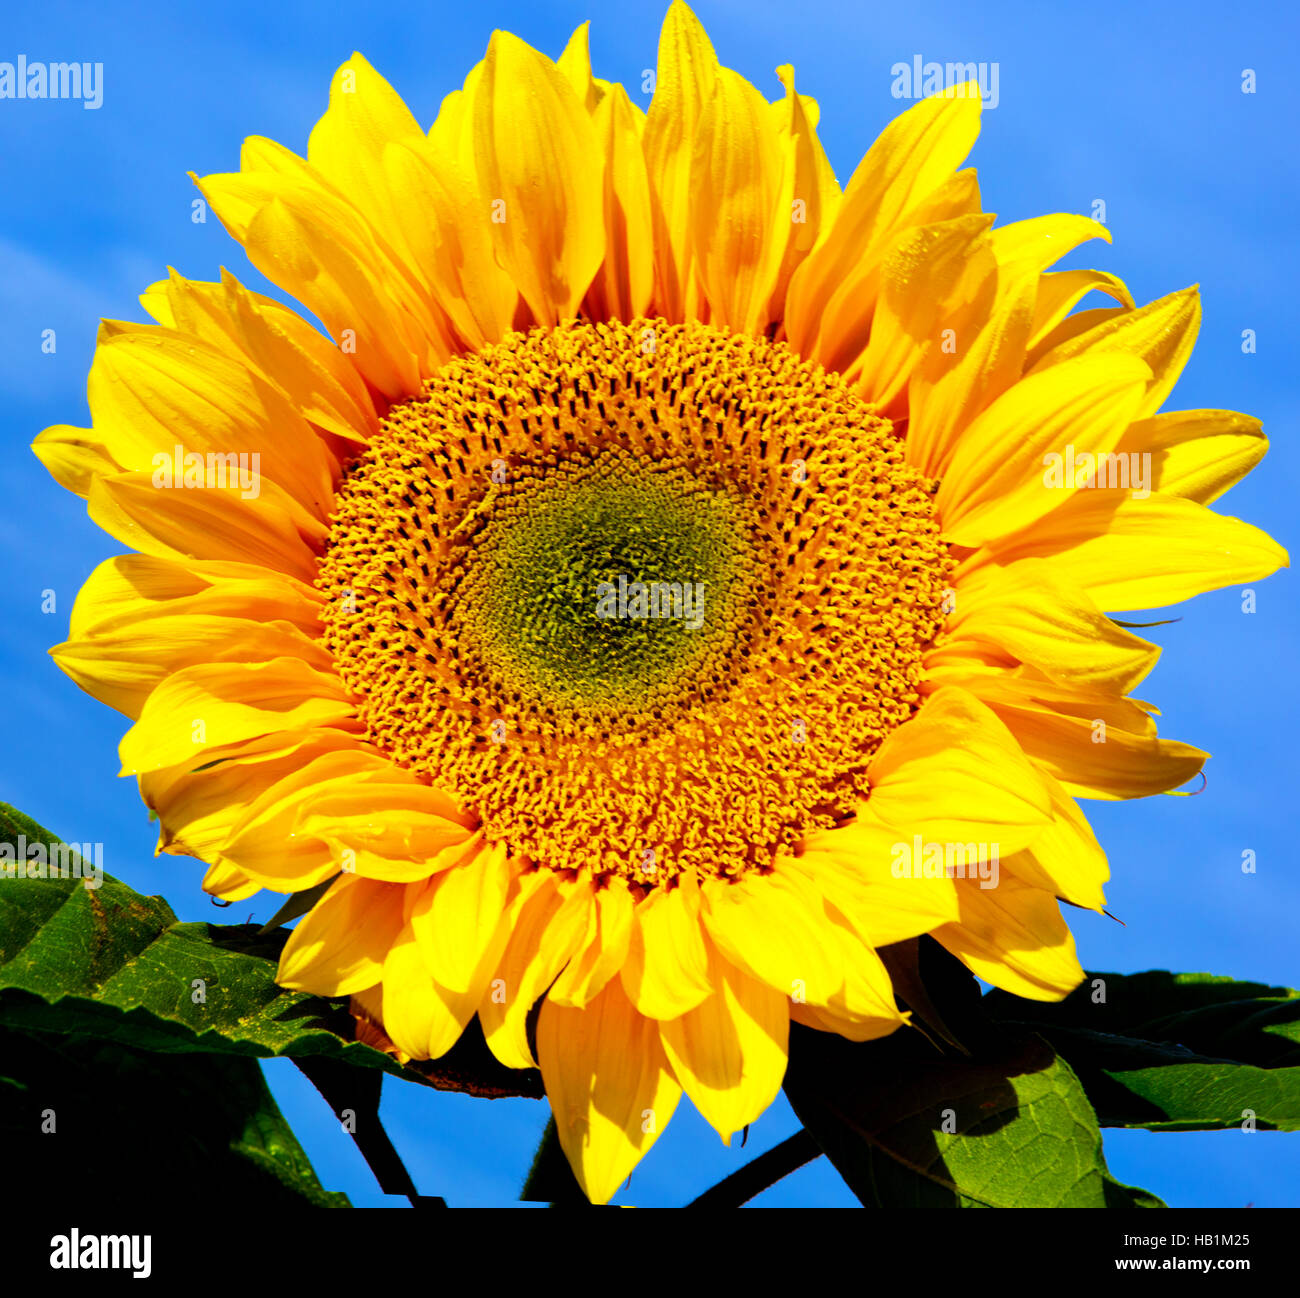 Sun flower against a blue sky. Stock Photo